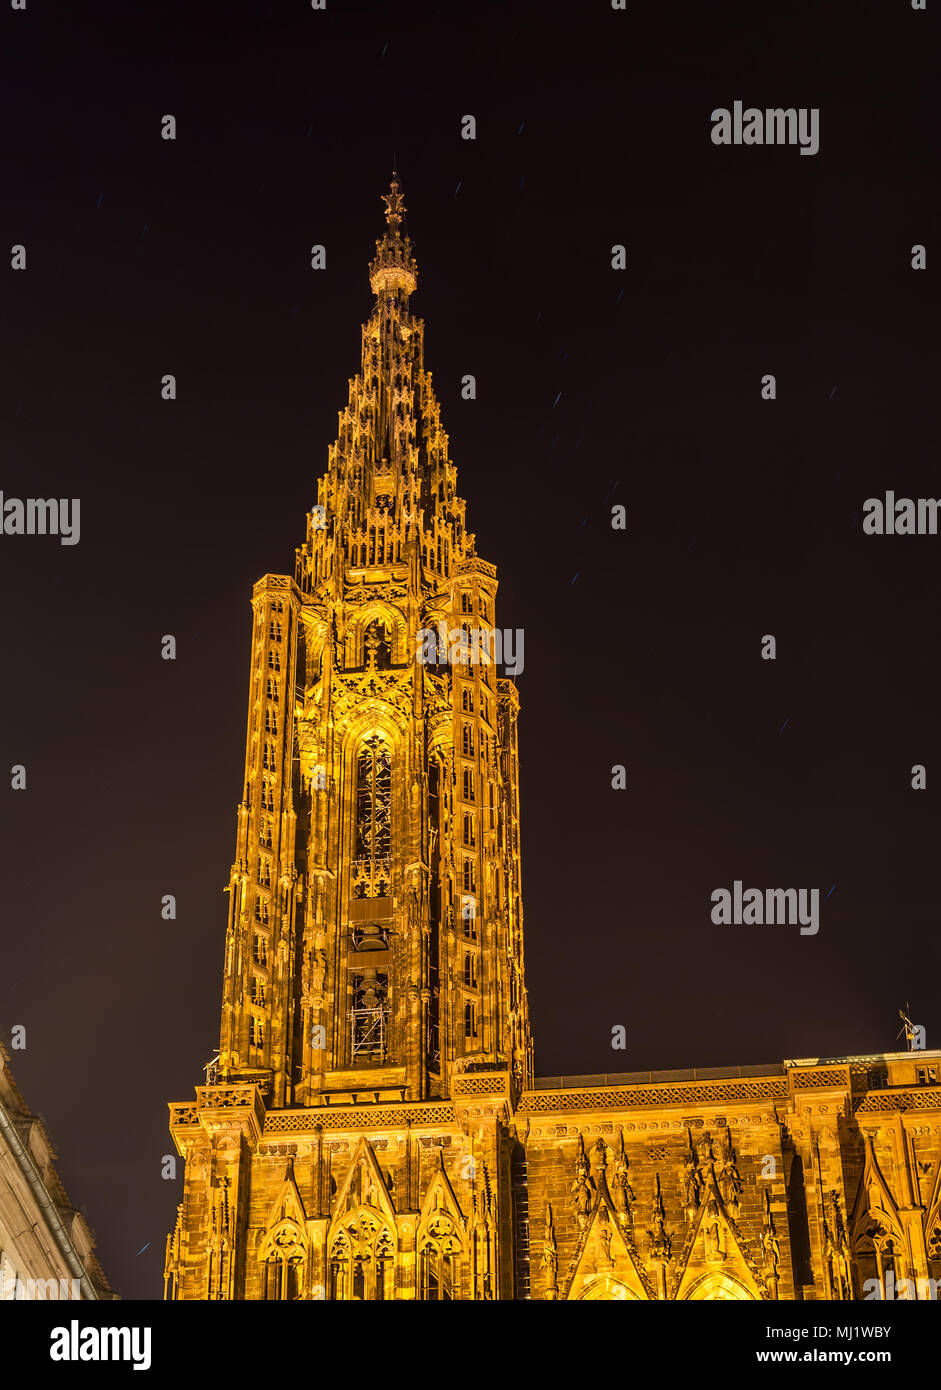 Vue de la cathédrale de Strasbourg, Notre-Dame de Strasbourg - Alsace, France Banque D'Images